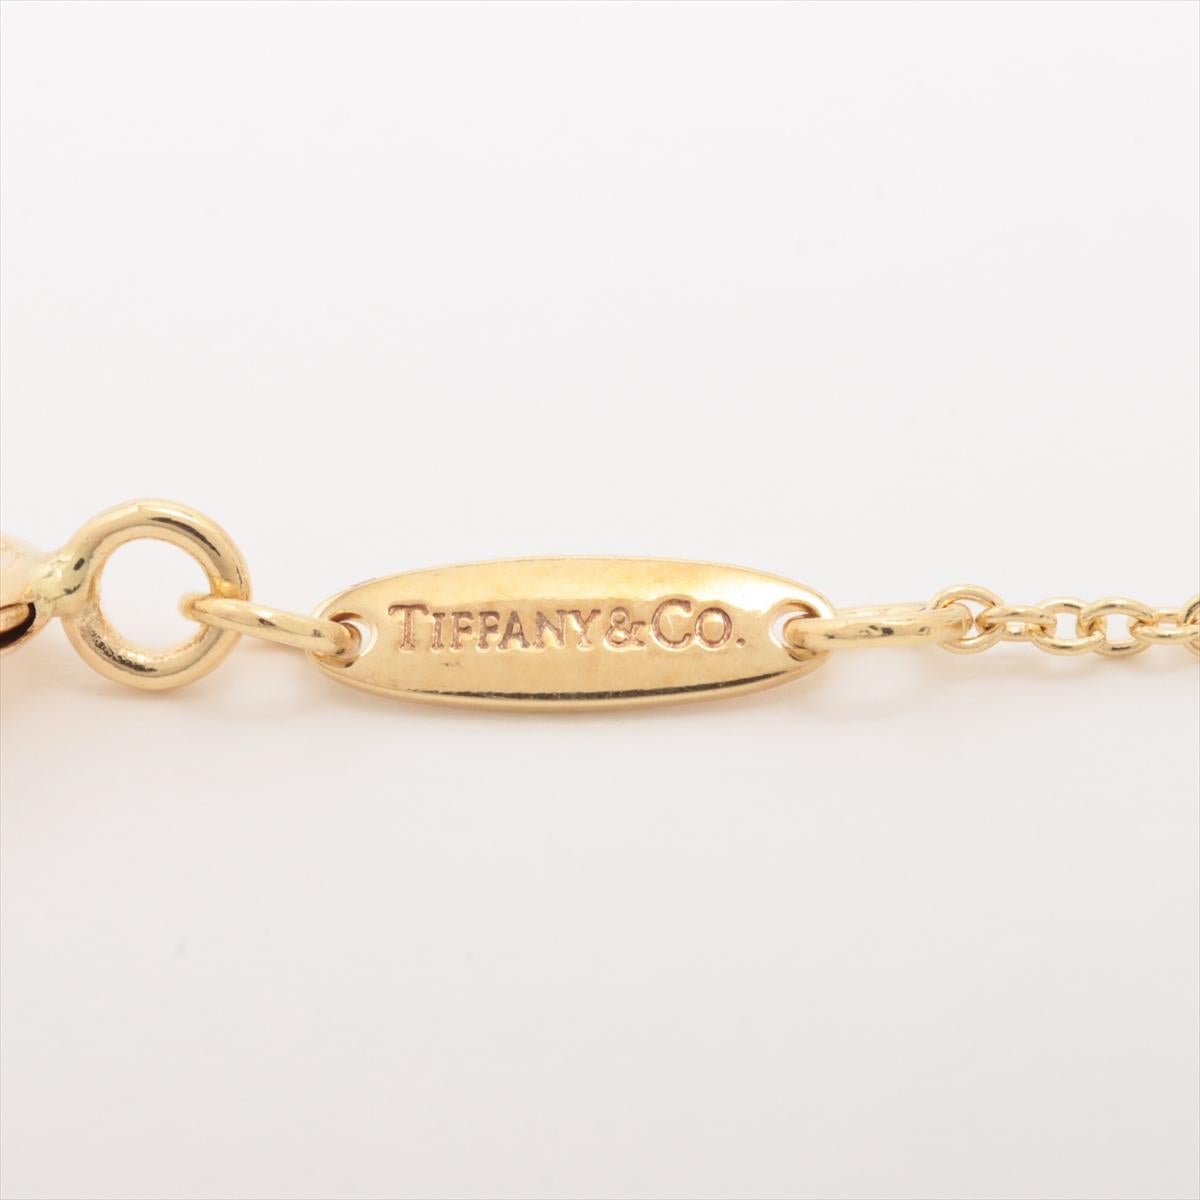 Marke : Tiffany 
Beschreibung: Tiffany Teardrop Halskette 
Metall Typ: 750YG/Gelbgold
Gewicht 5,0g
Zustand: Gebraucht; leichte Gebrauchsspuren
Box -  Nicht inbegriffen
Papiere - Eingeschlossen
